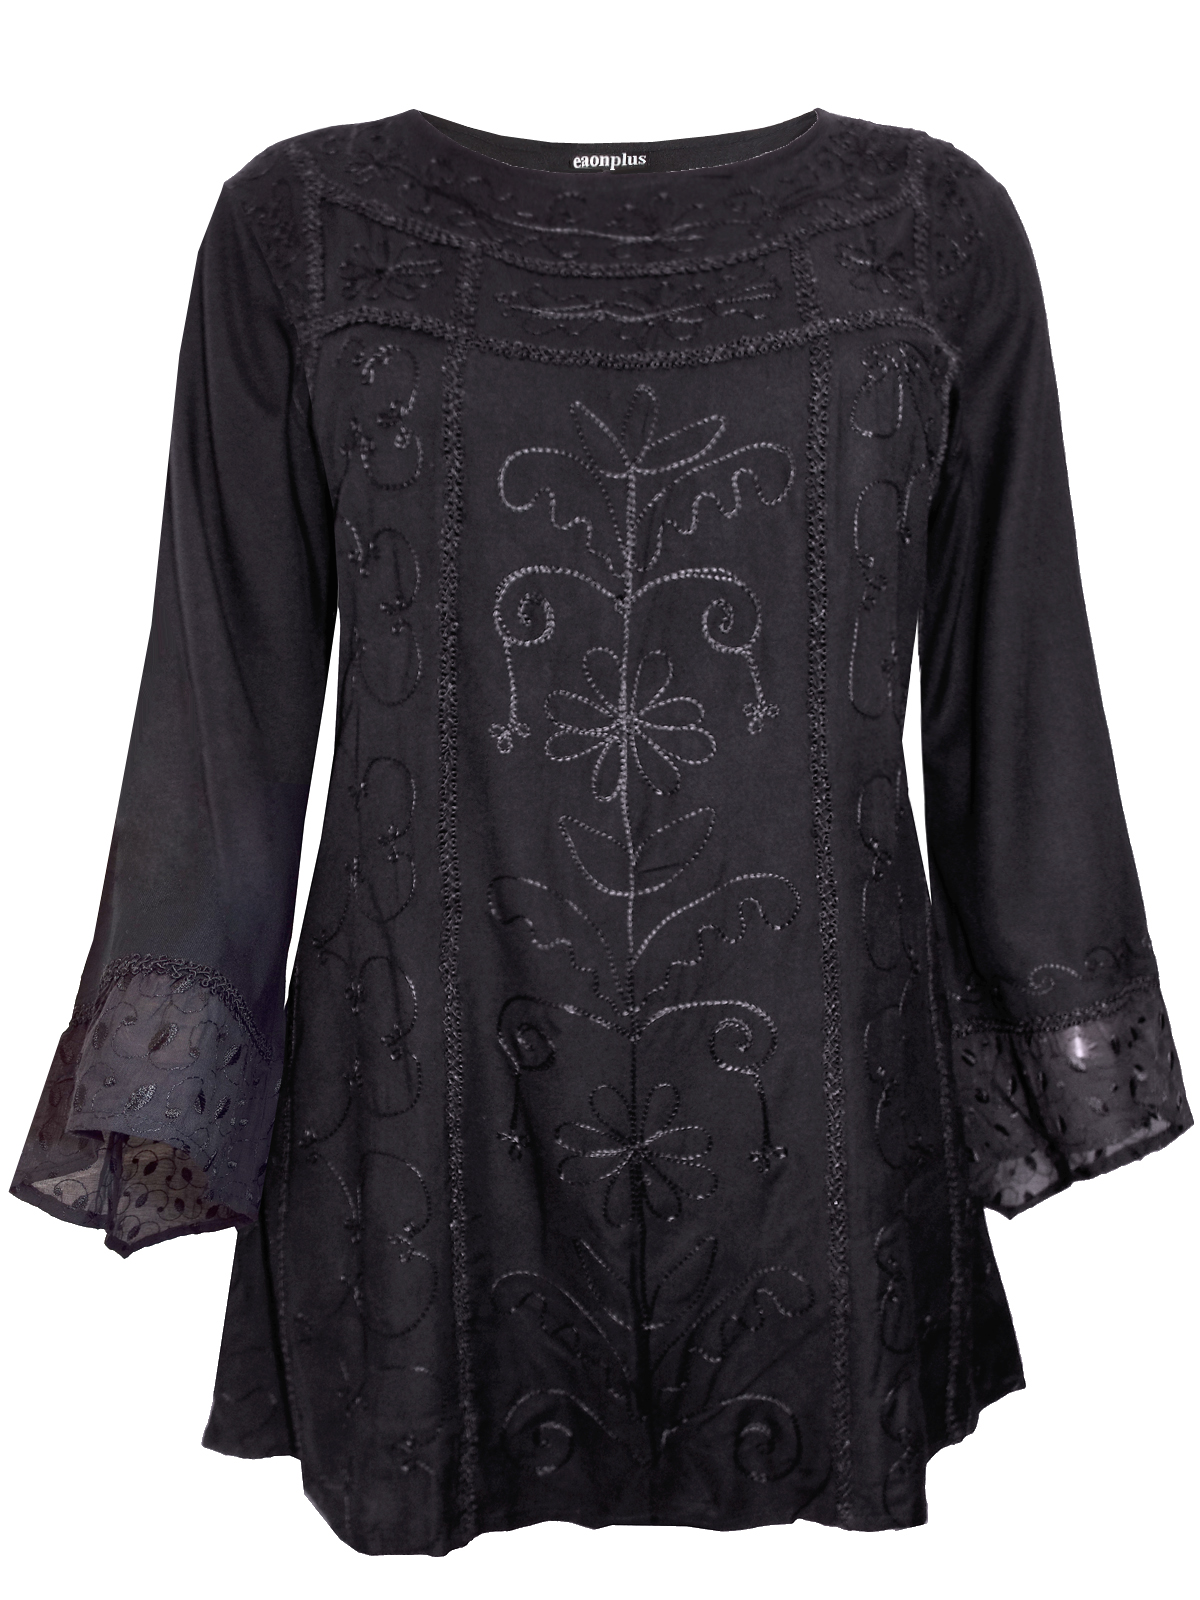 eaonplus BLACK Egyptian Renaissance Gothic Tunic - Plus Size 18 to 32